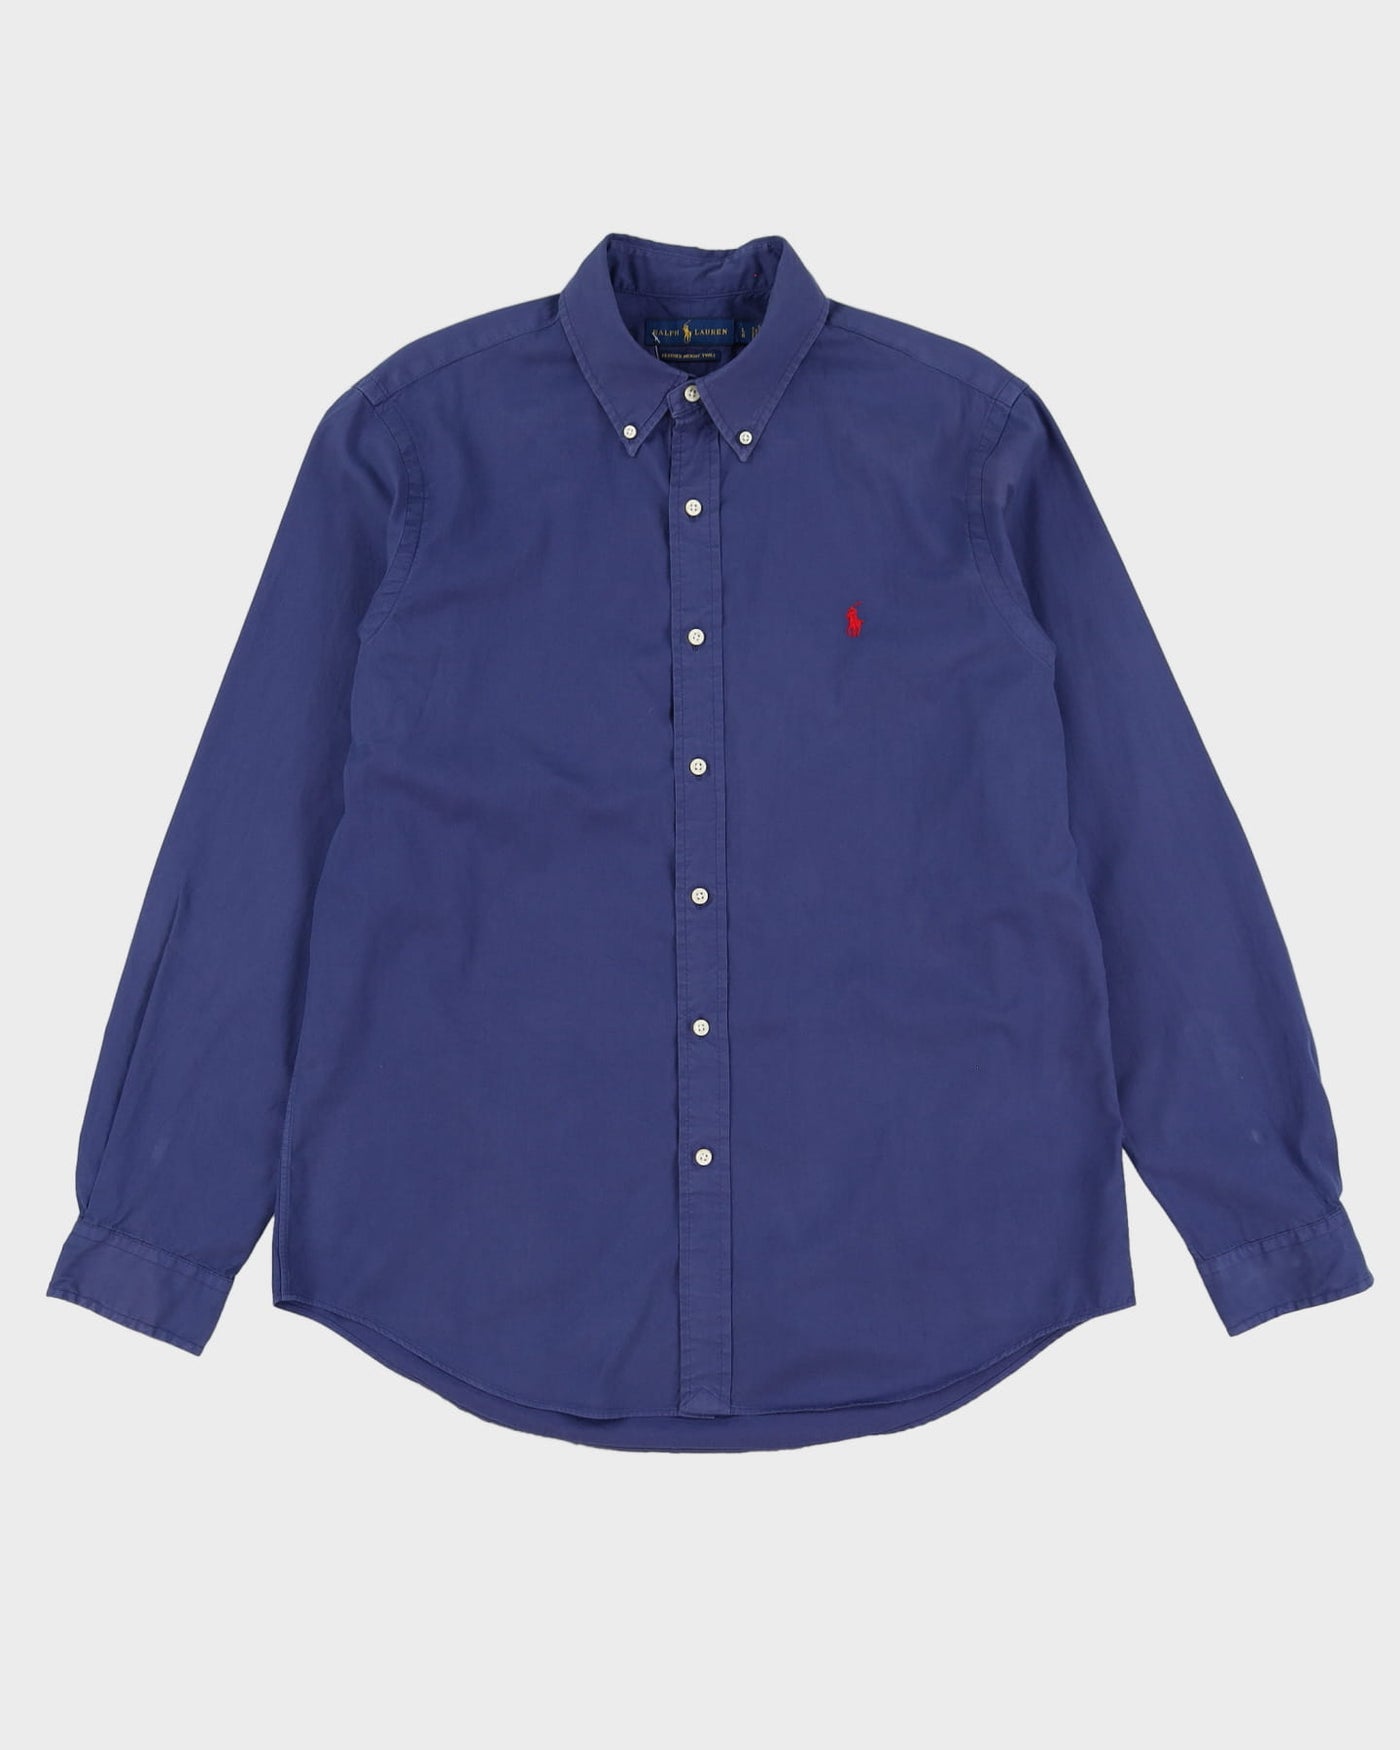 Ralph Lauren Blue Button Up Shirt - L